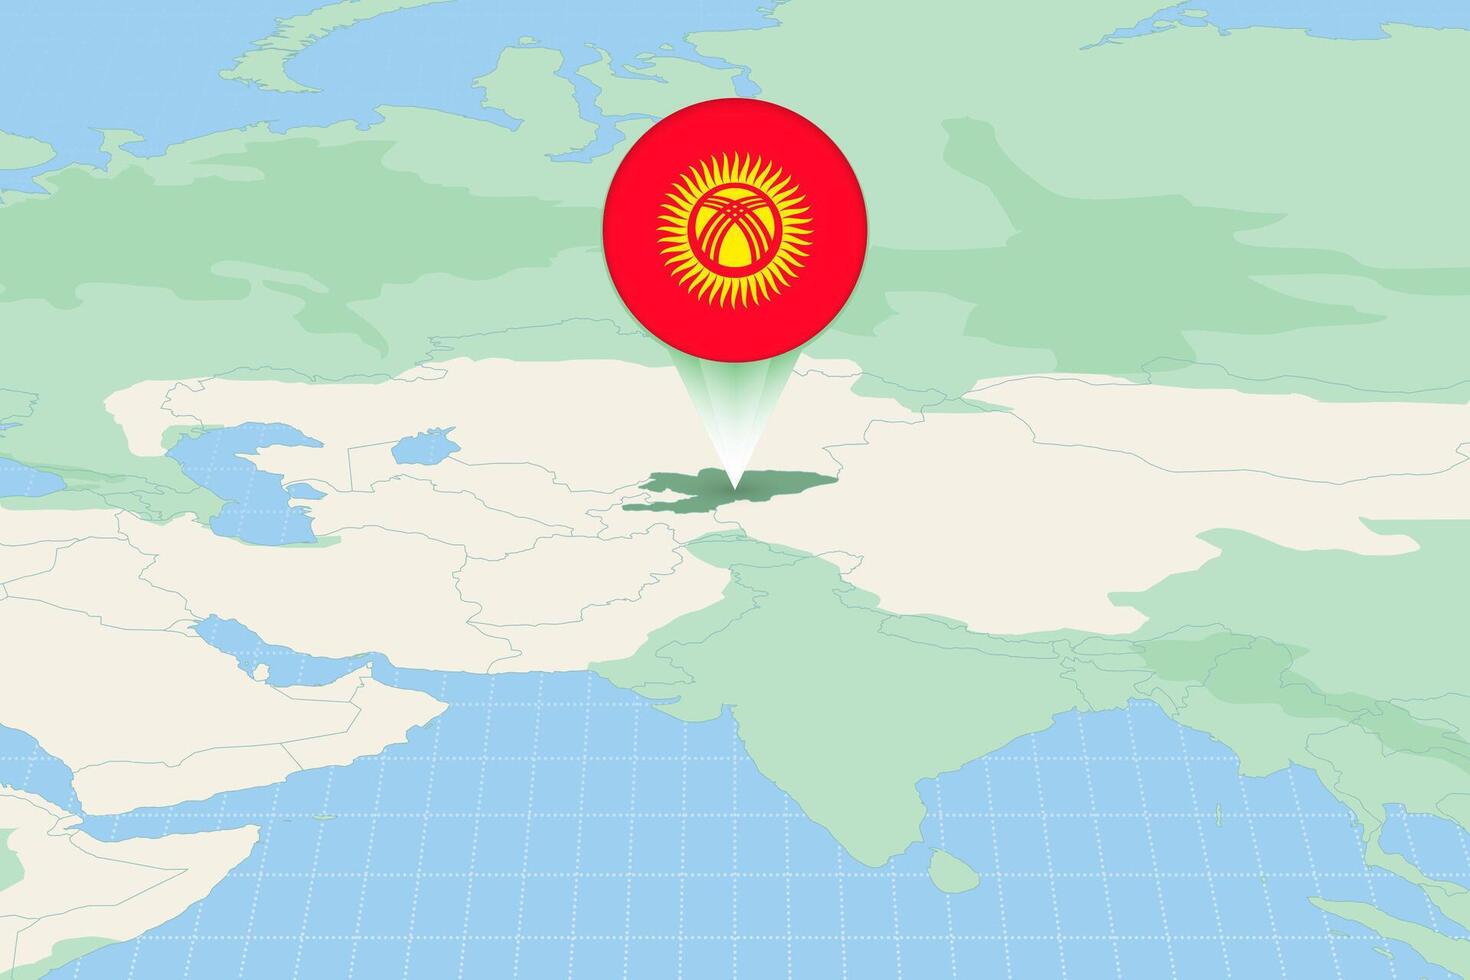 Karte Illustration von Kirgisistan mit das Flagge. kartografisch Illustration von Kirgisistan und benachbart Länder. vektor